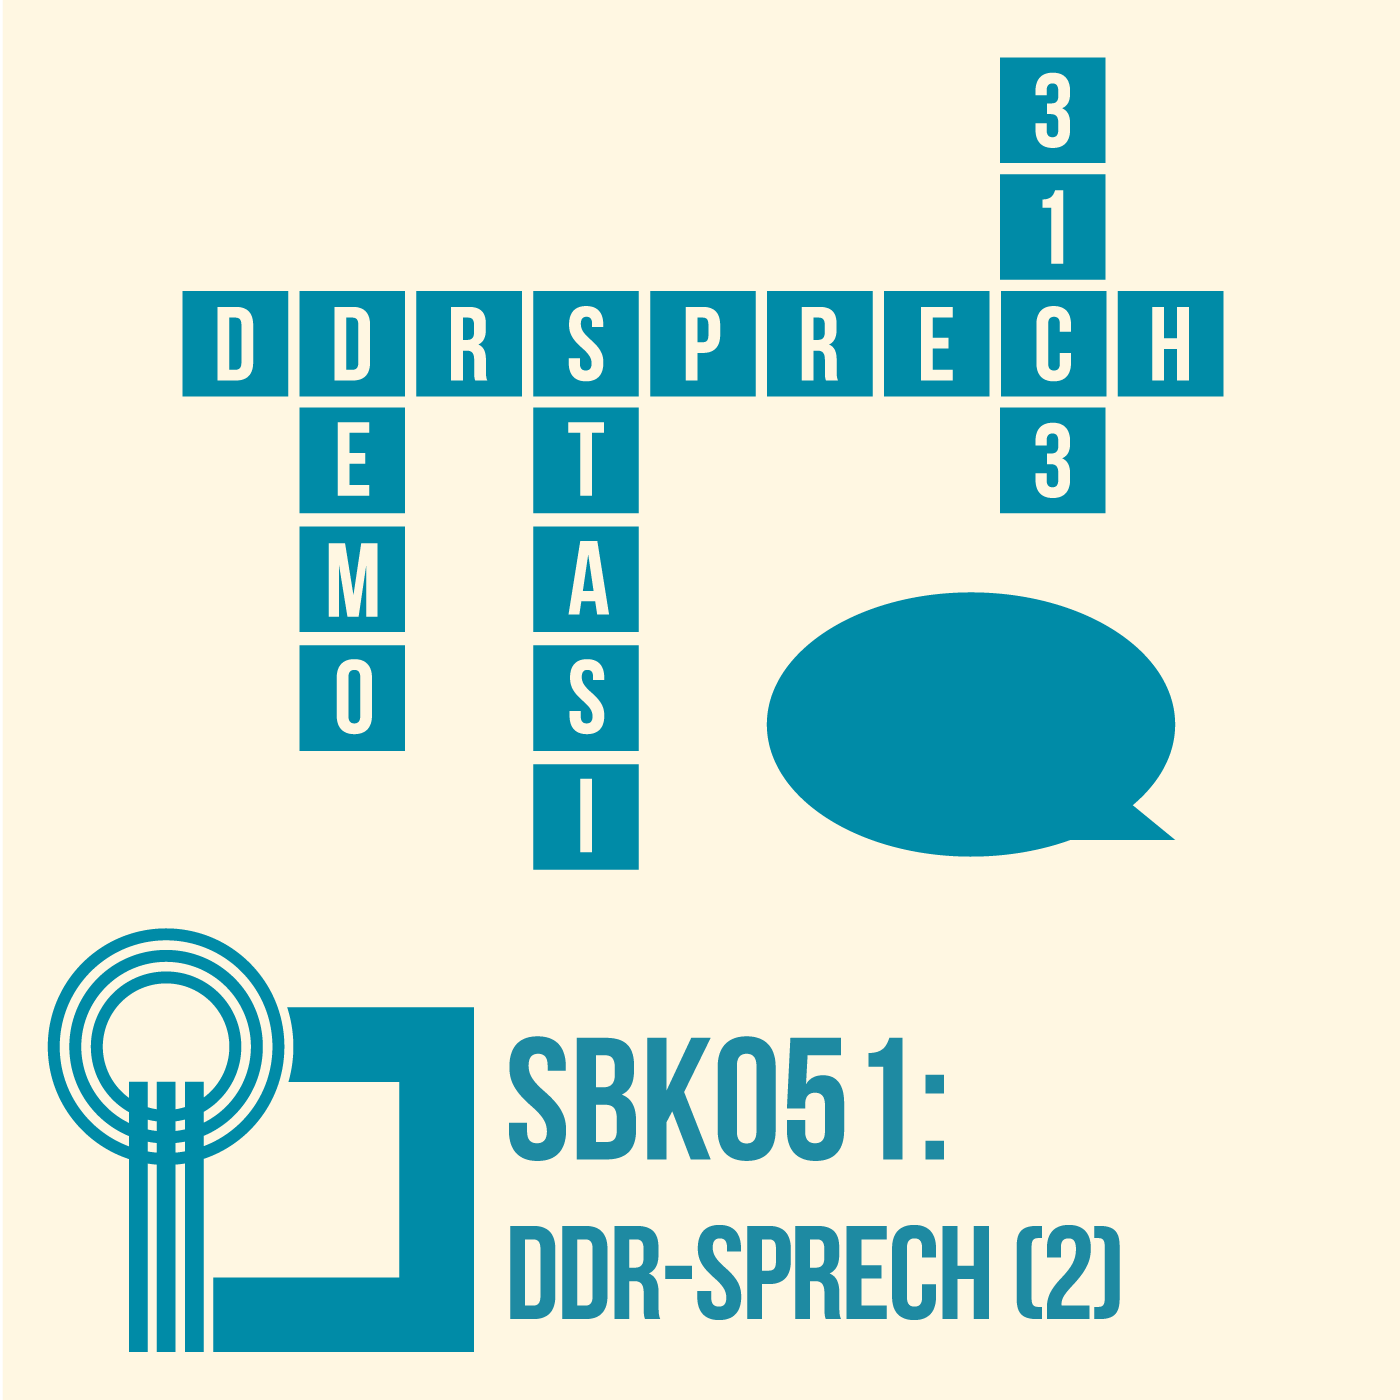 DDR-Sprech (2)